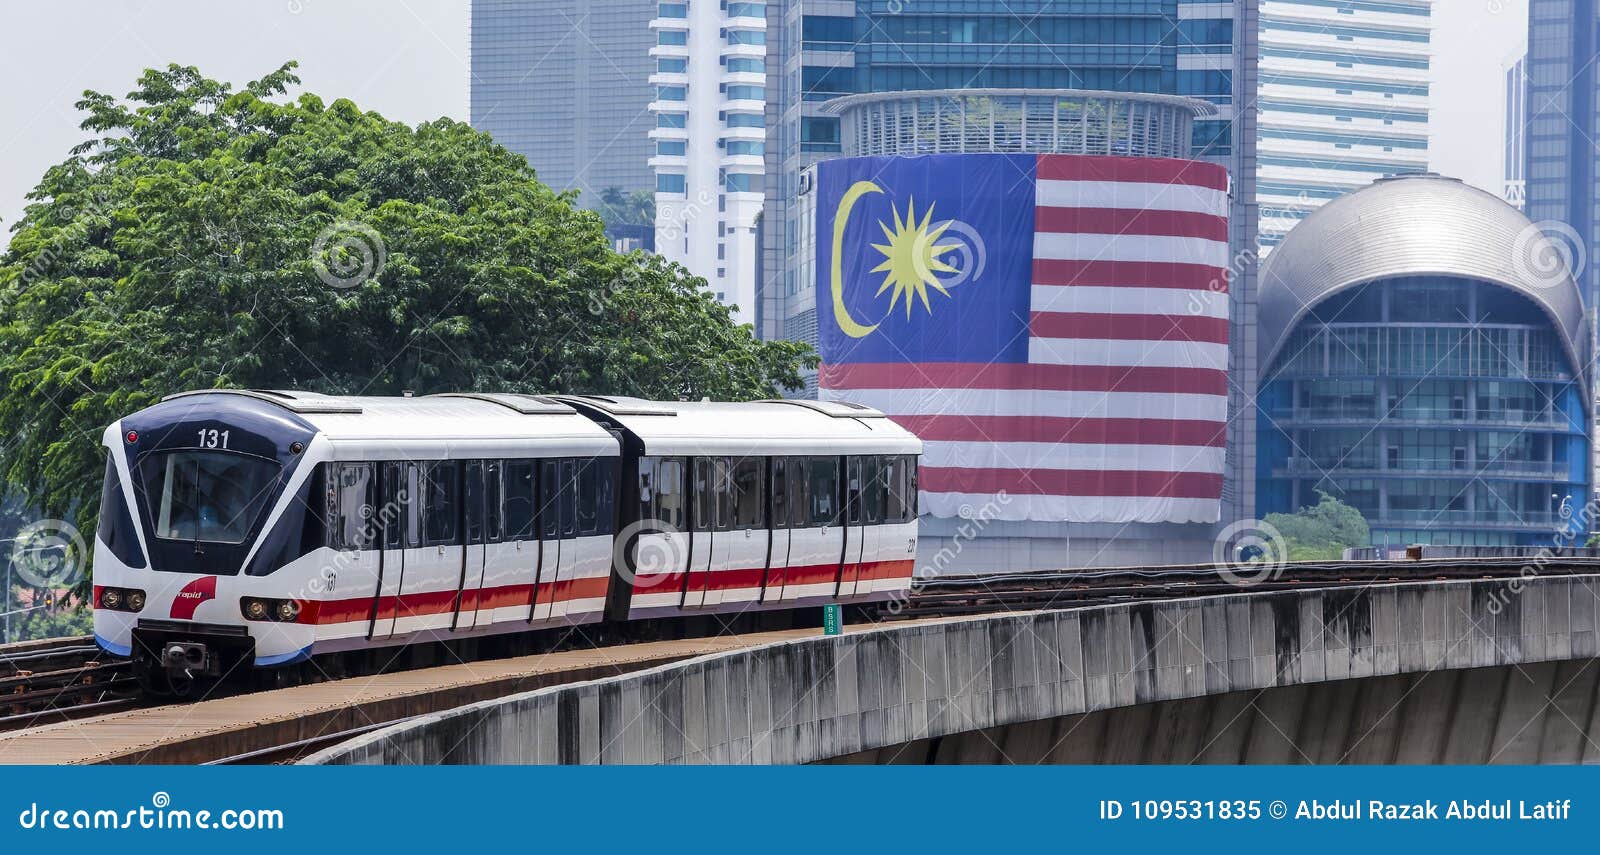 2023马来亚铁路建设有限公司游玩攻略,在吉隆坡特意去游览老火车站...【去哪儿攻略】